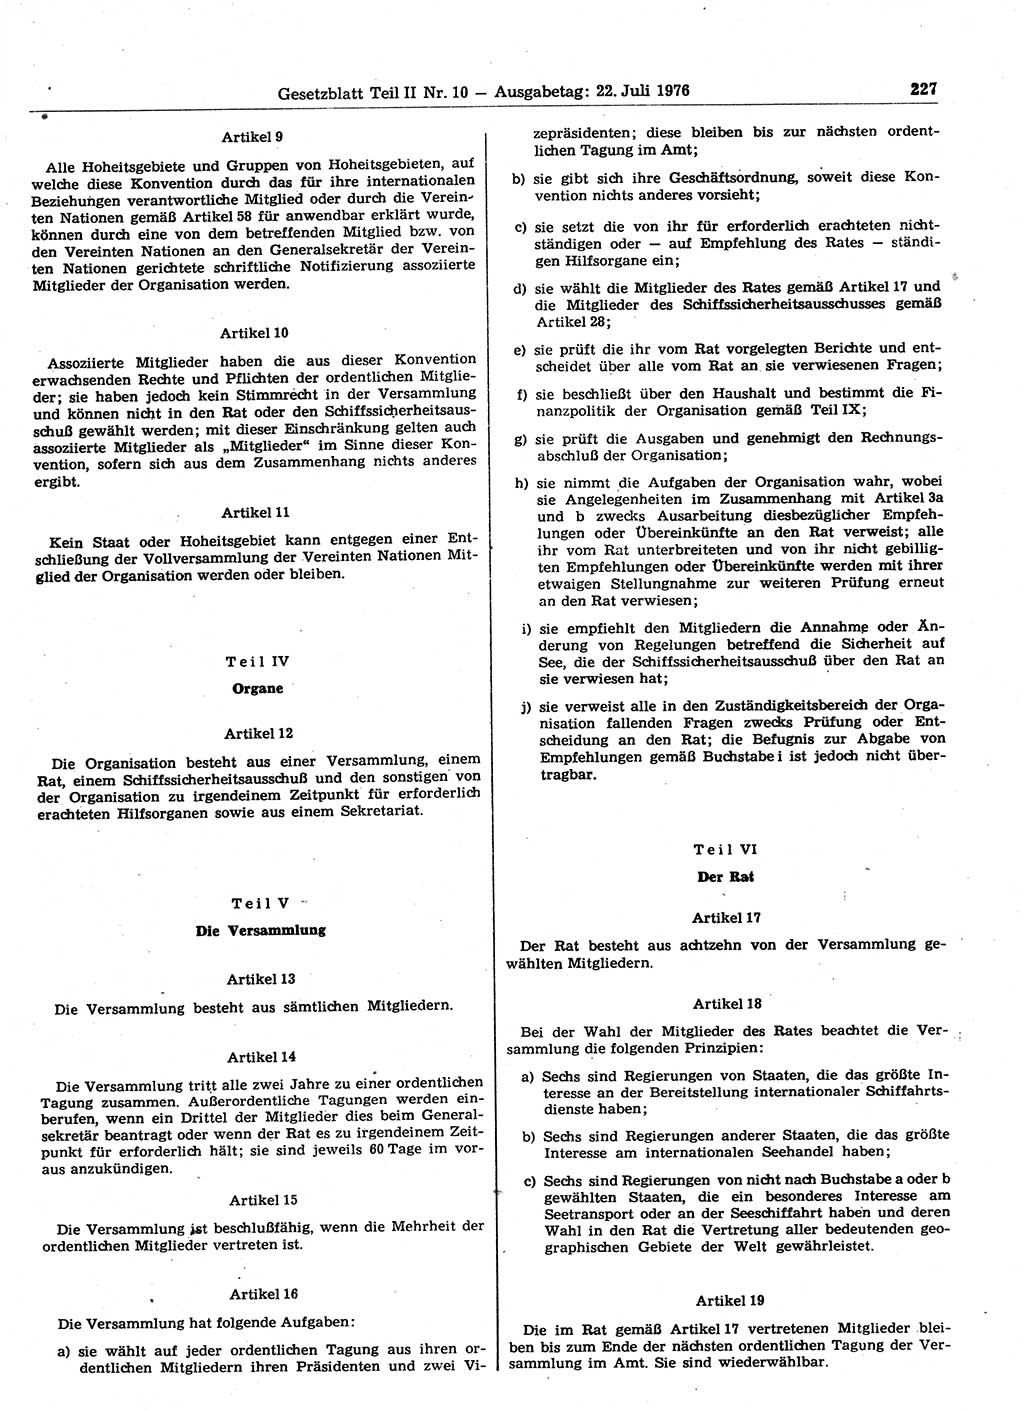 Gesetzblatt (GBl.) der Deutschen Demokratischen Republik (DDR) Teil ⅠⅠ 1976, Seite 227 (GBl. DDR ⅠⅠ 1976, S. 227)